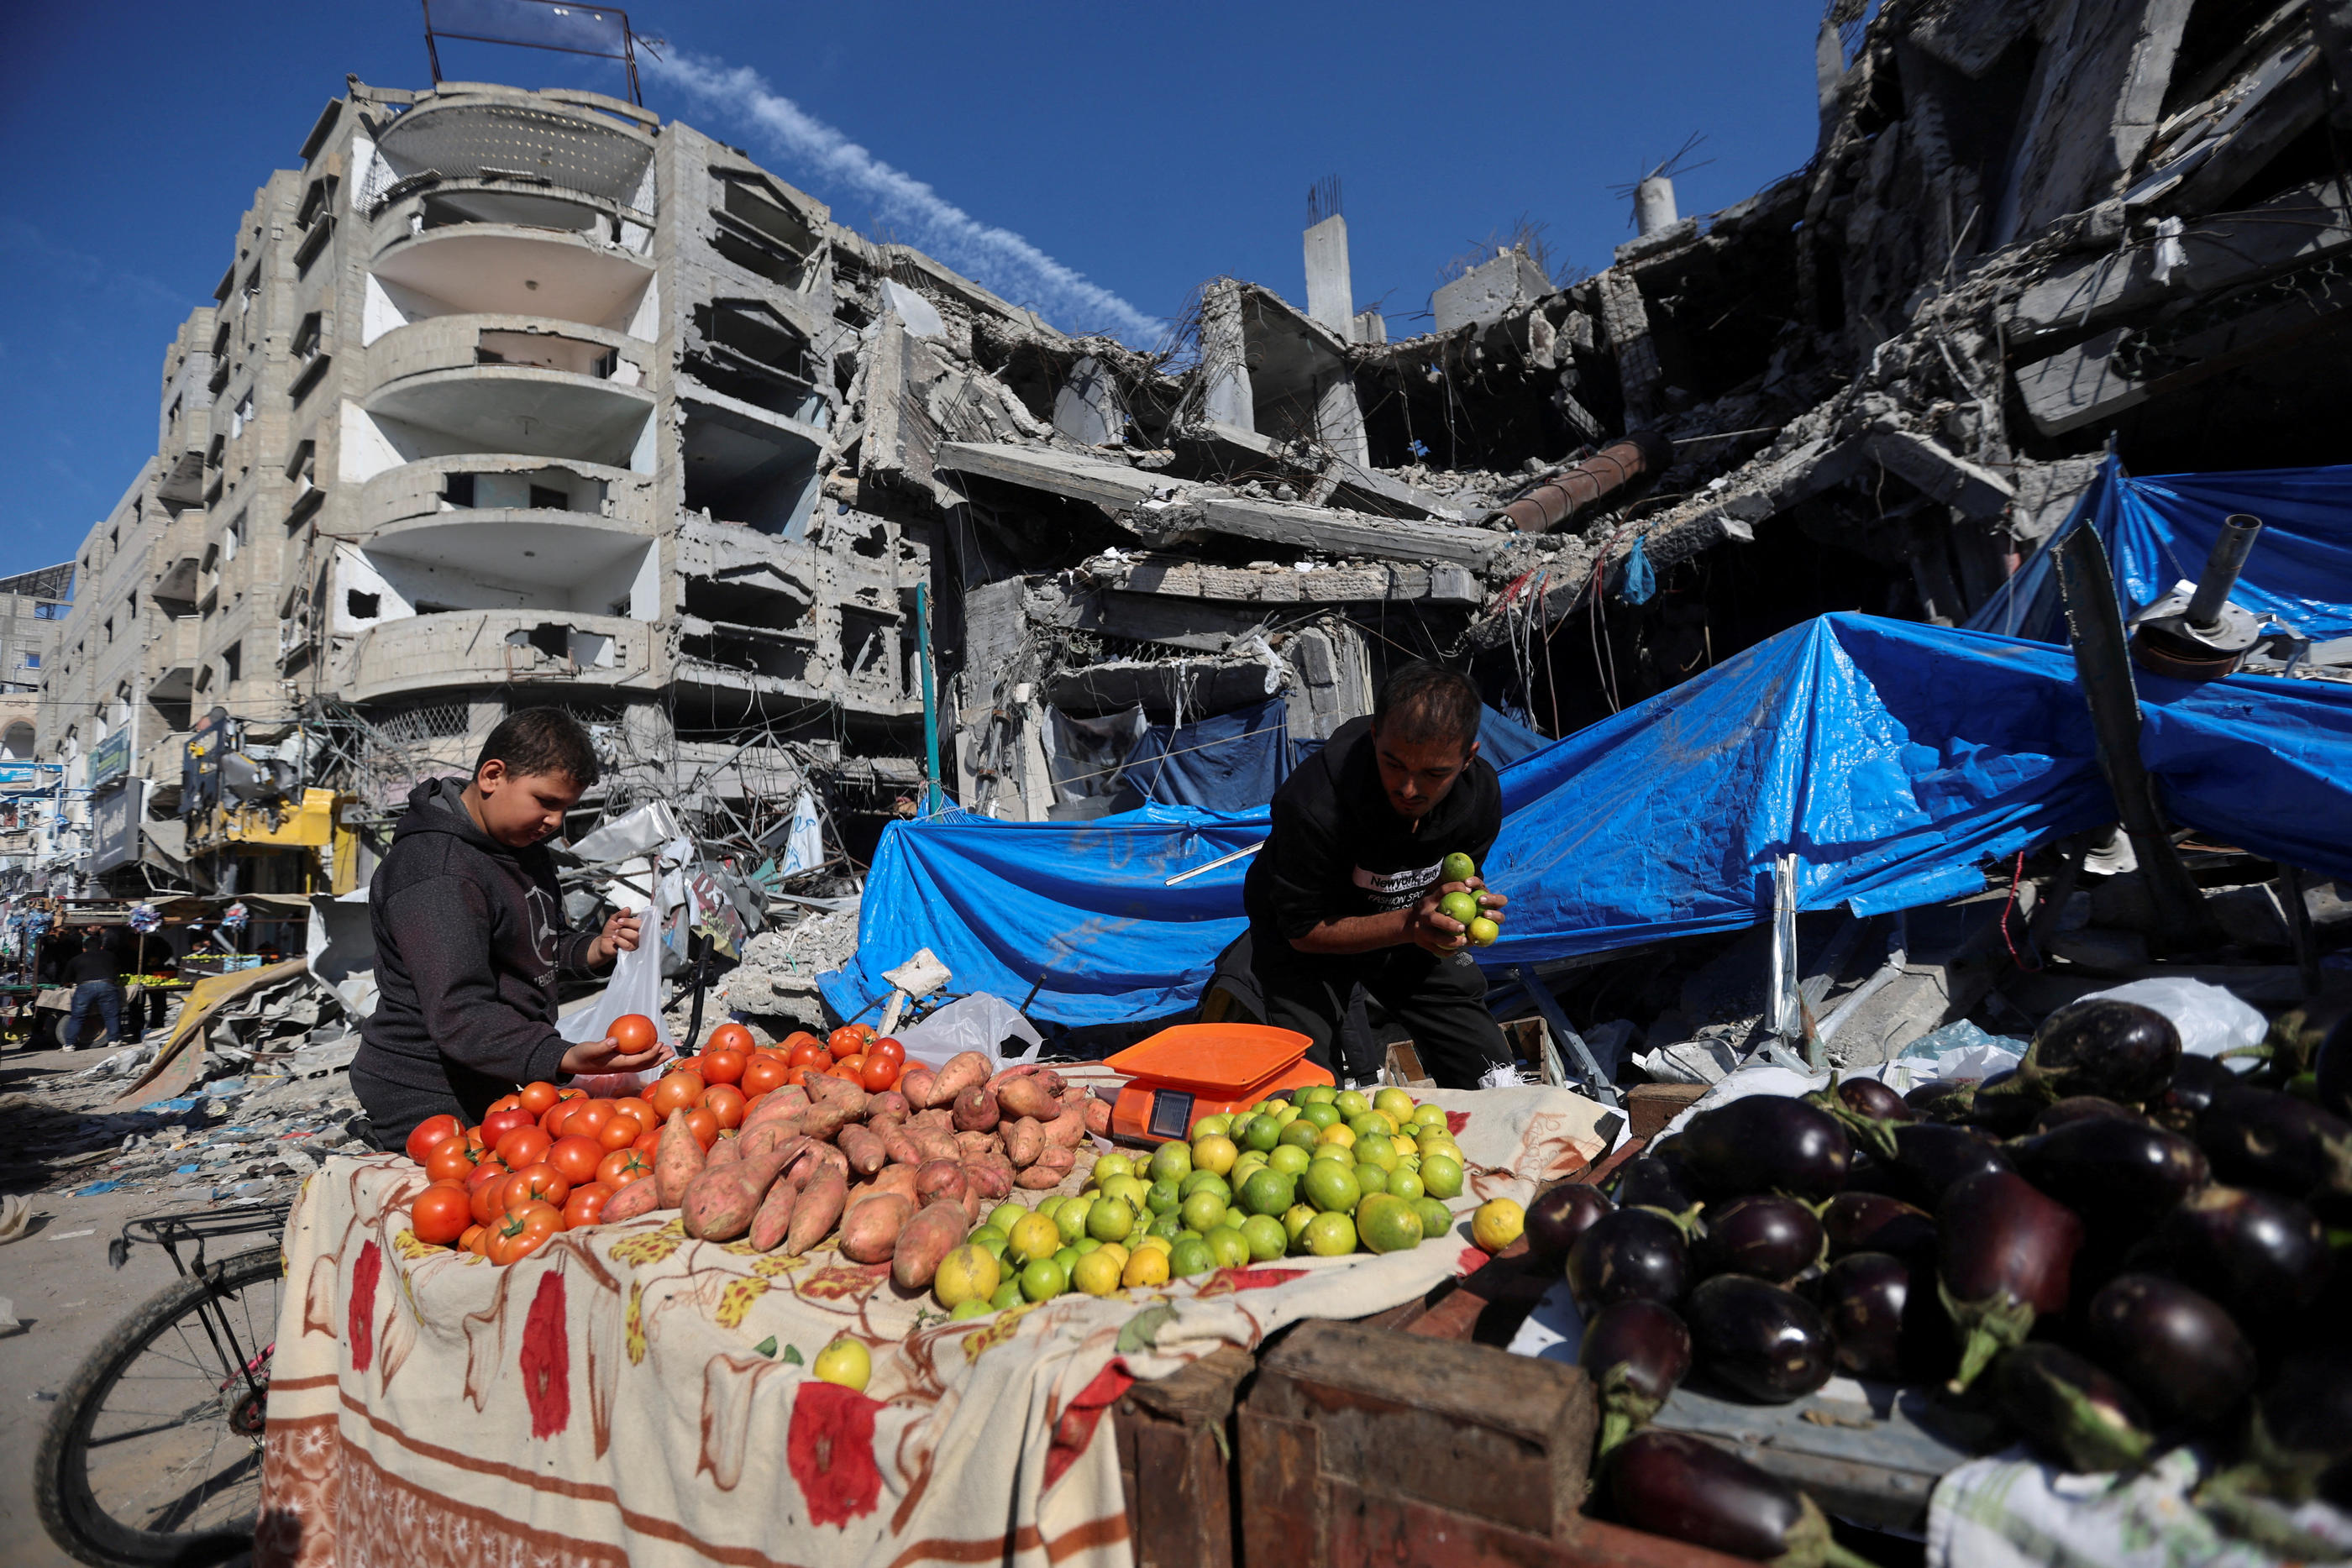 La trêve humanitaire a permis l'arrivée de denrées alimentaires à Gaza, principalement des fruits et des légumes. Reuters/Ibraheem Abu Mustafa